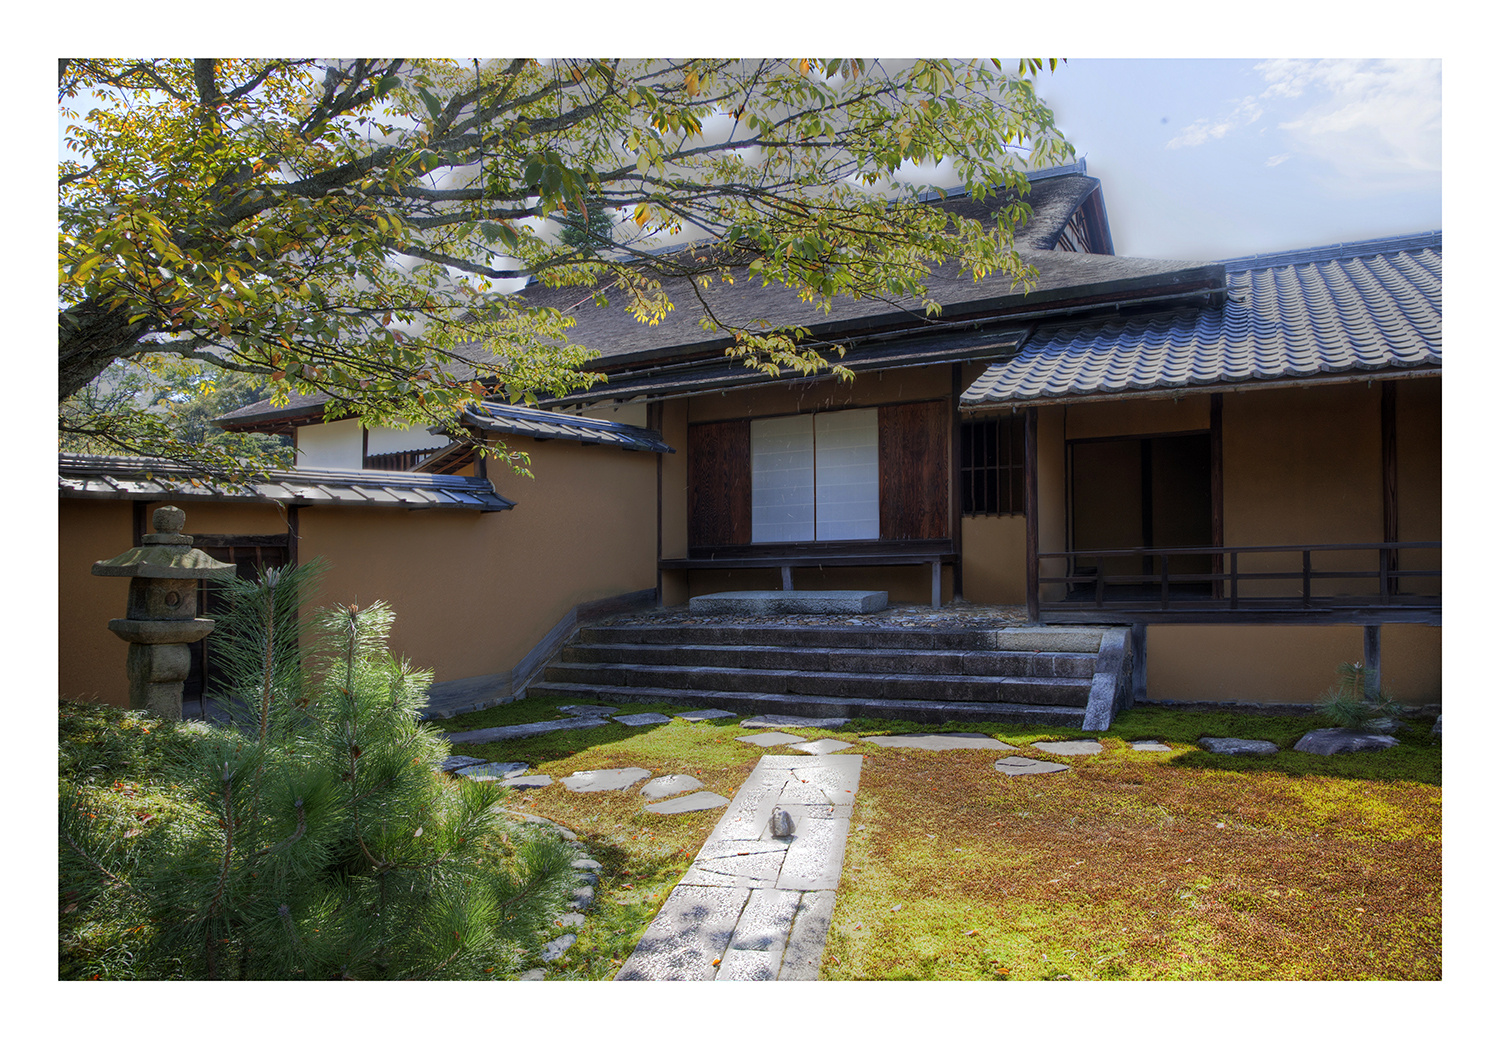 Katsura Imperial Villa in Kyoto-23